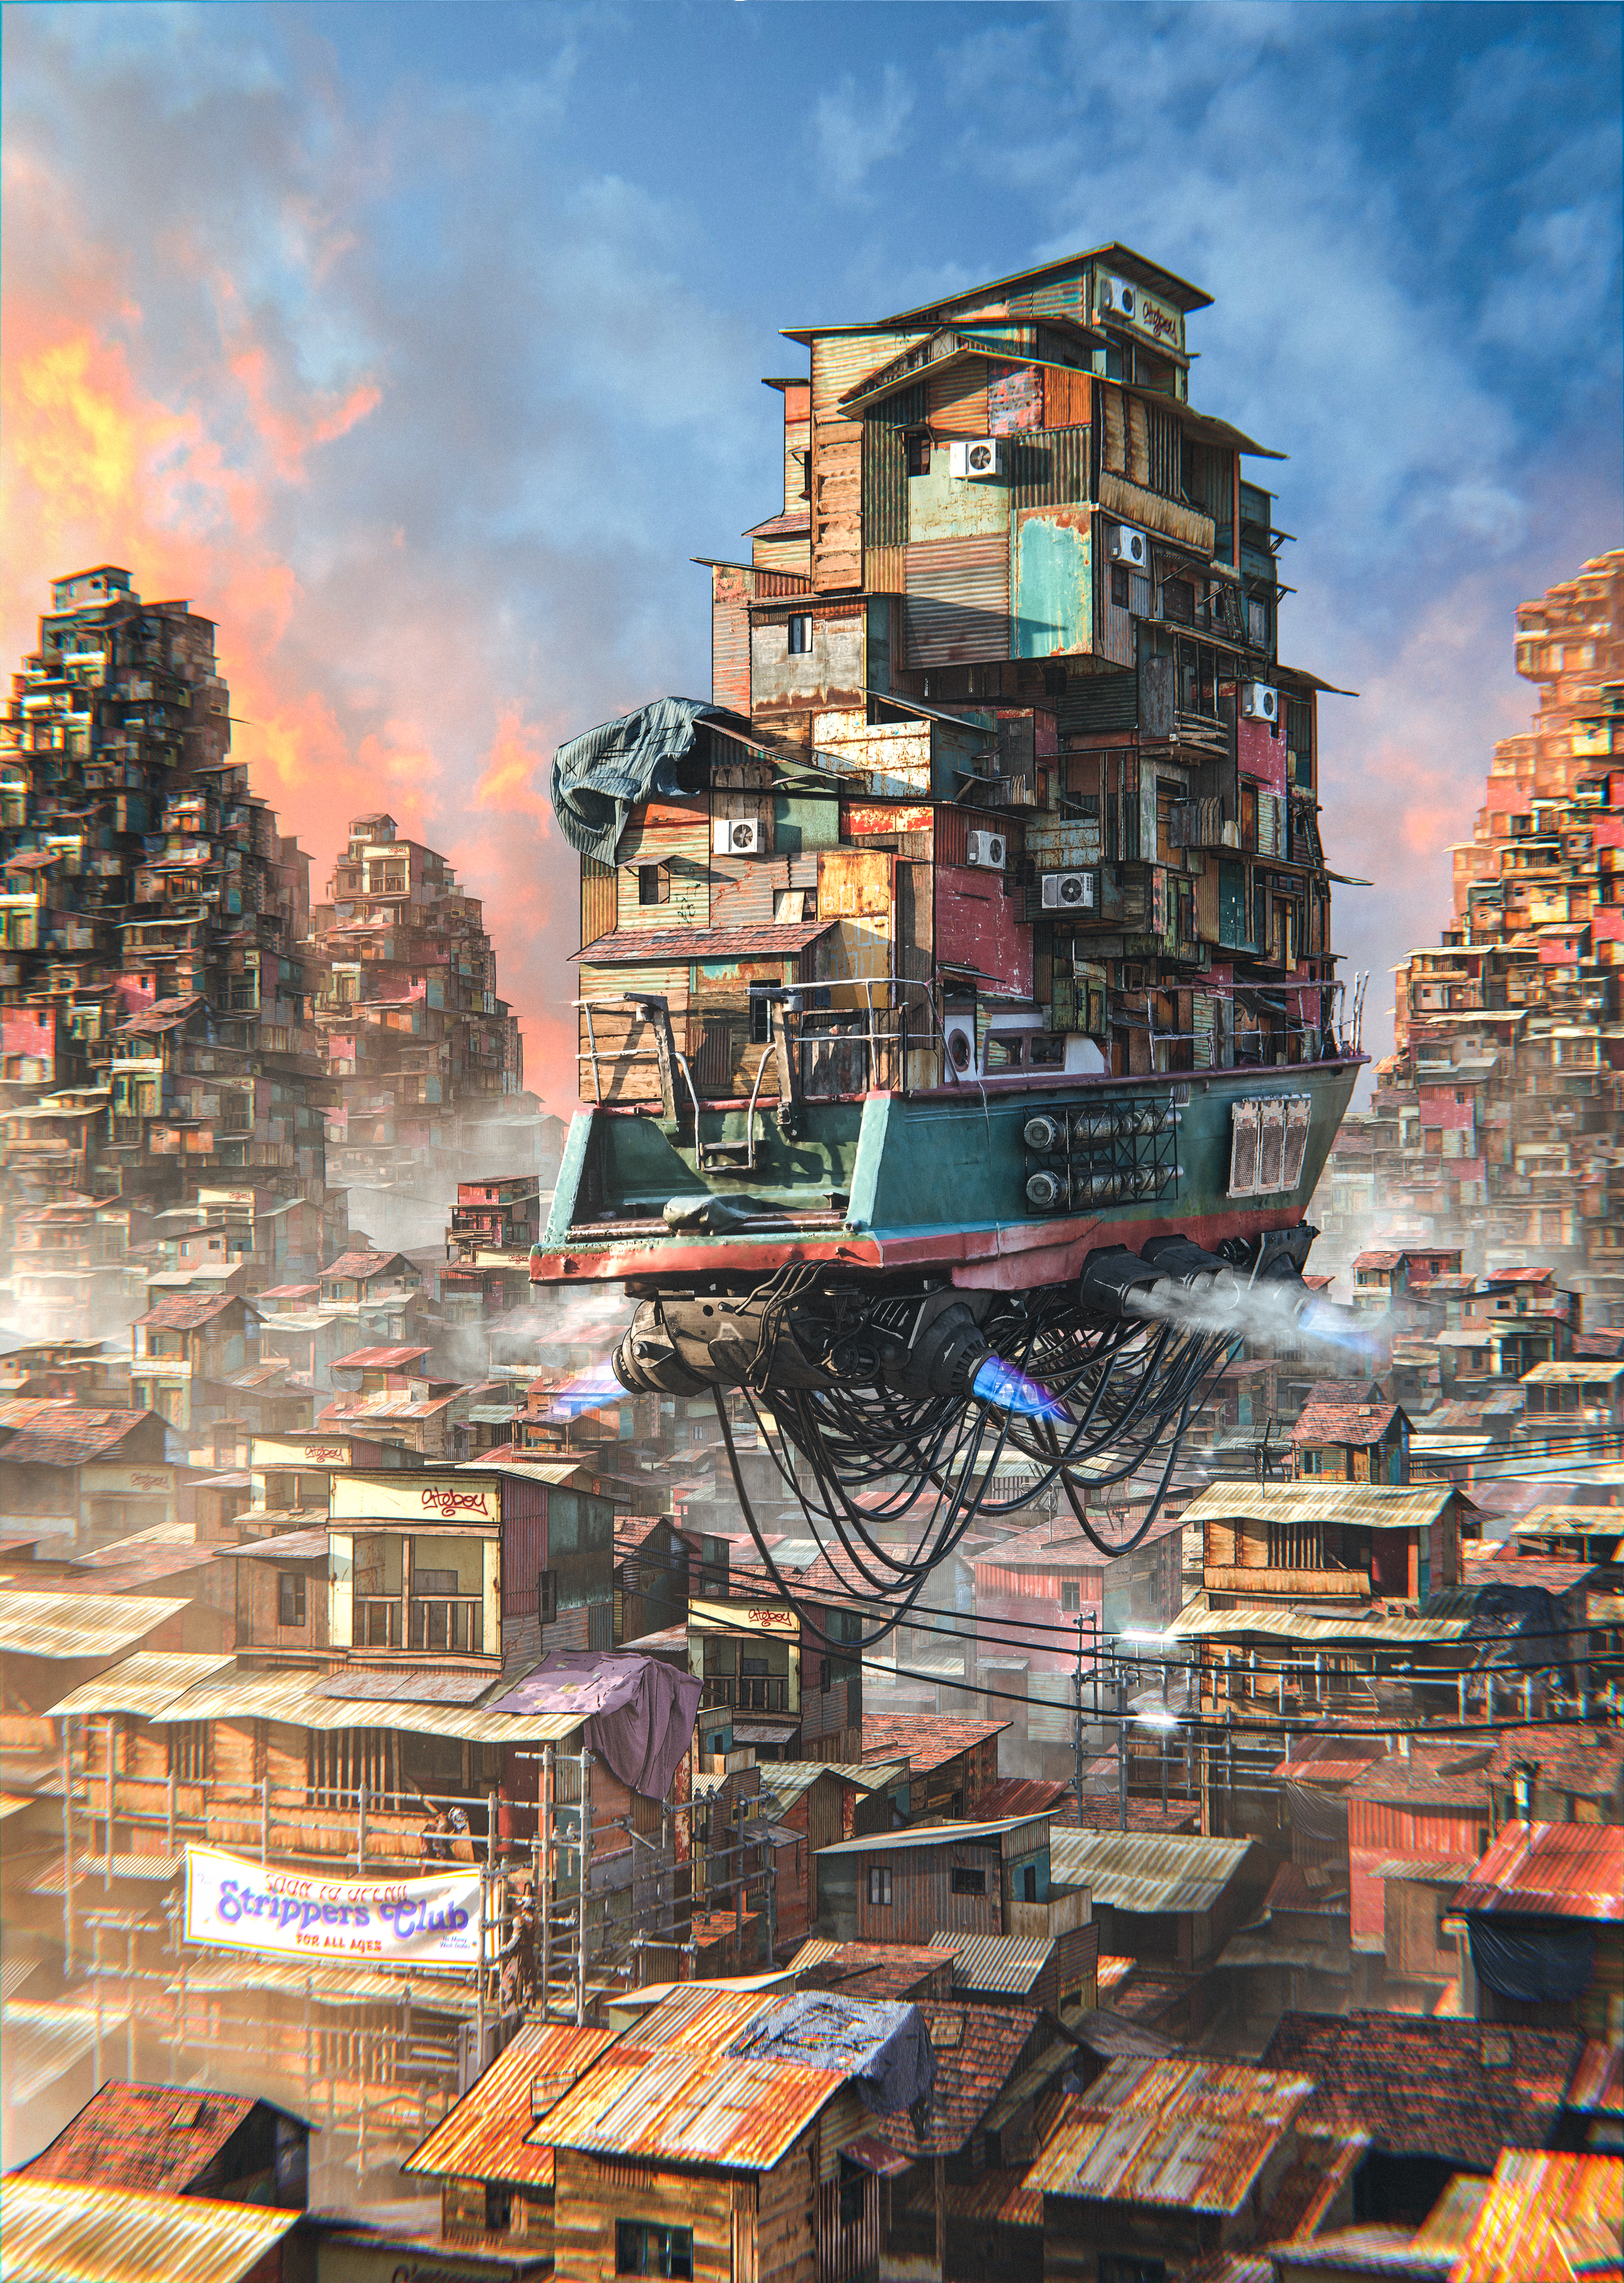 city in ruin by CerresVictoria on DeviantArt